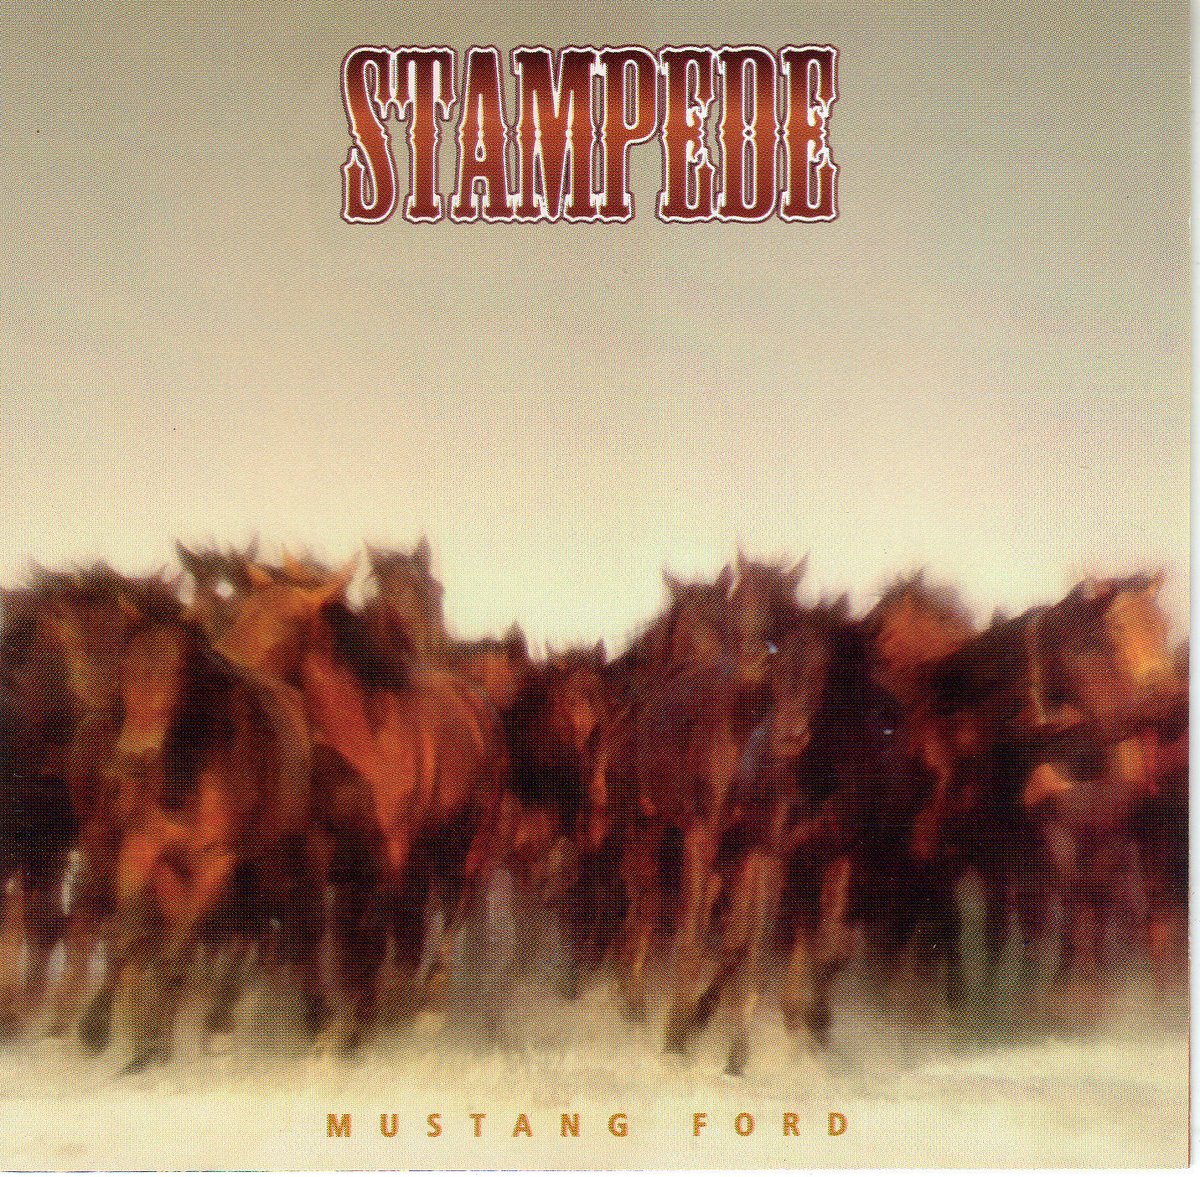 Mustang Ford ont sorti 2 albums chez Sticksister Records en 1997 et 1998, et ensuite tout le monde les a malheureusement oublié. 
#MustangFord @stickmanrecords 

Mustang Ford - Fate 
youtu.be/qD1ufgNEgLE